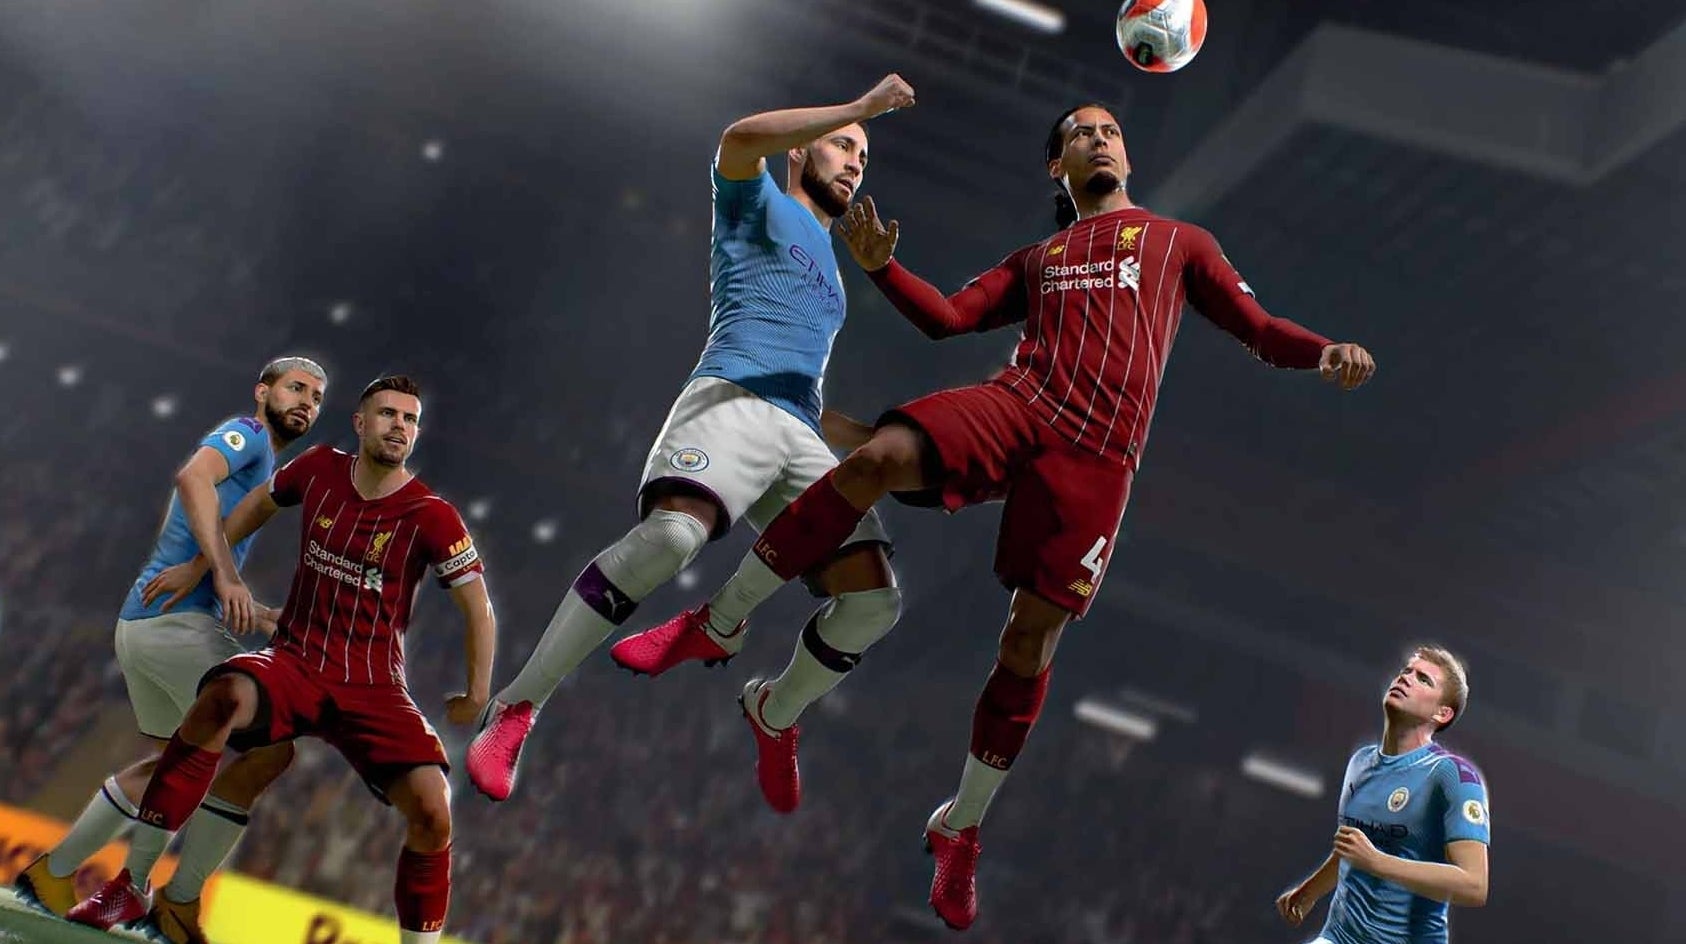 Bilder zu FIFA 21 Tipps - Die große Übersicht